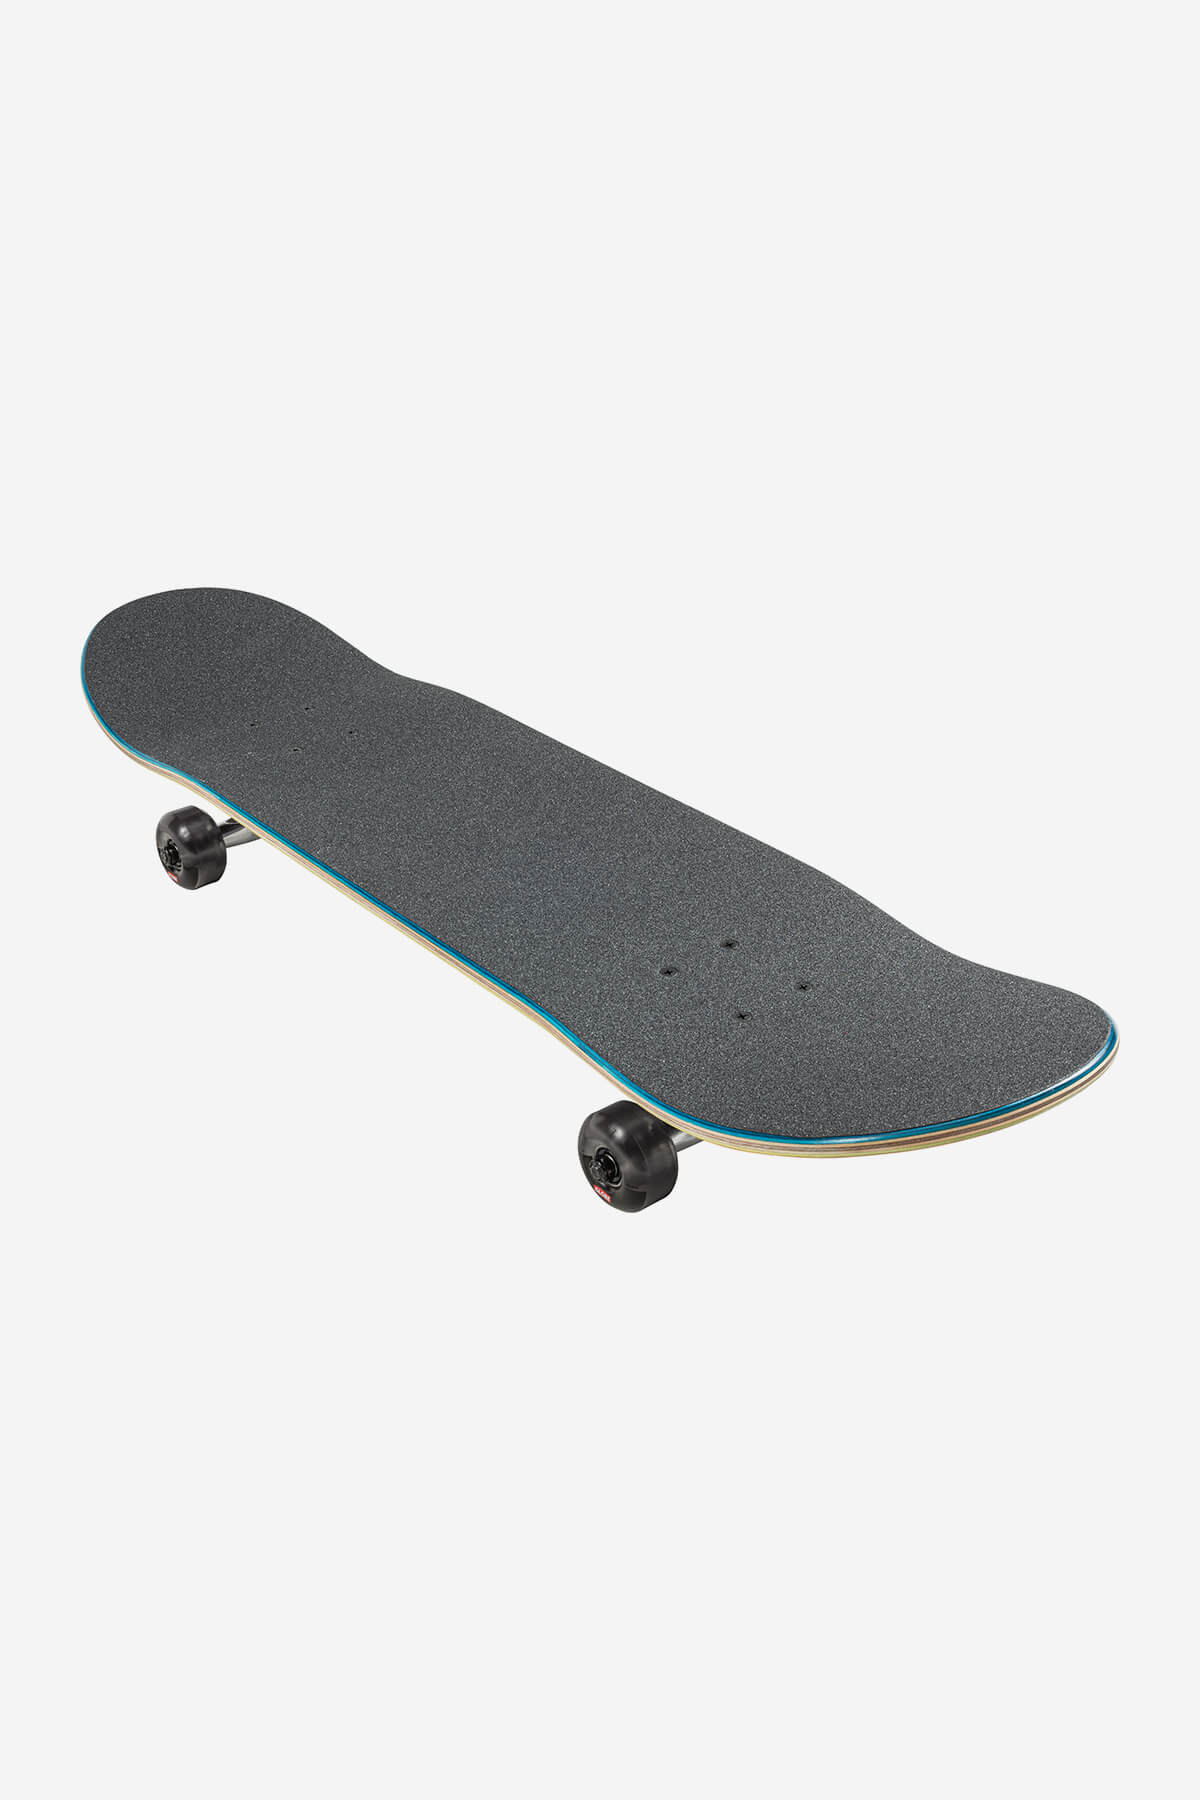 g1 ablaze black dye 8.0" komplett skateboard